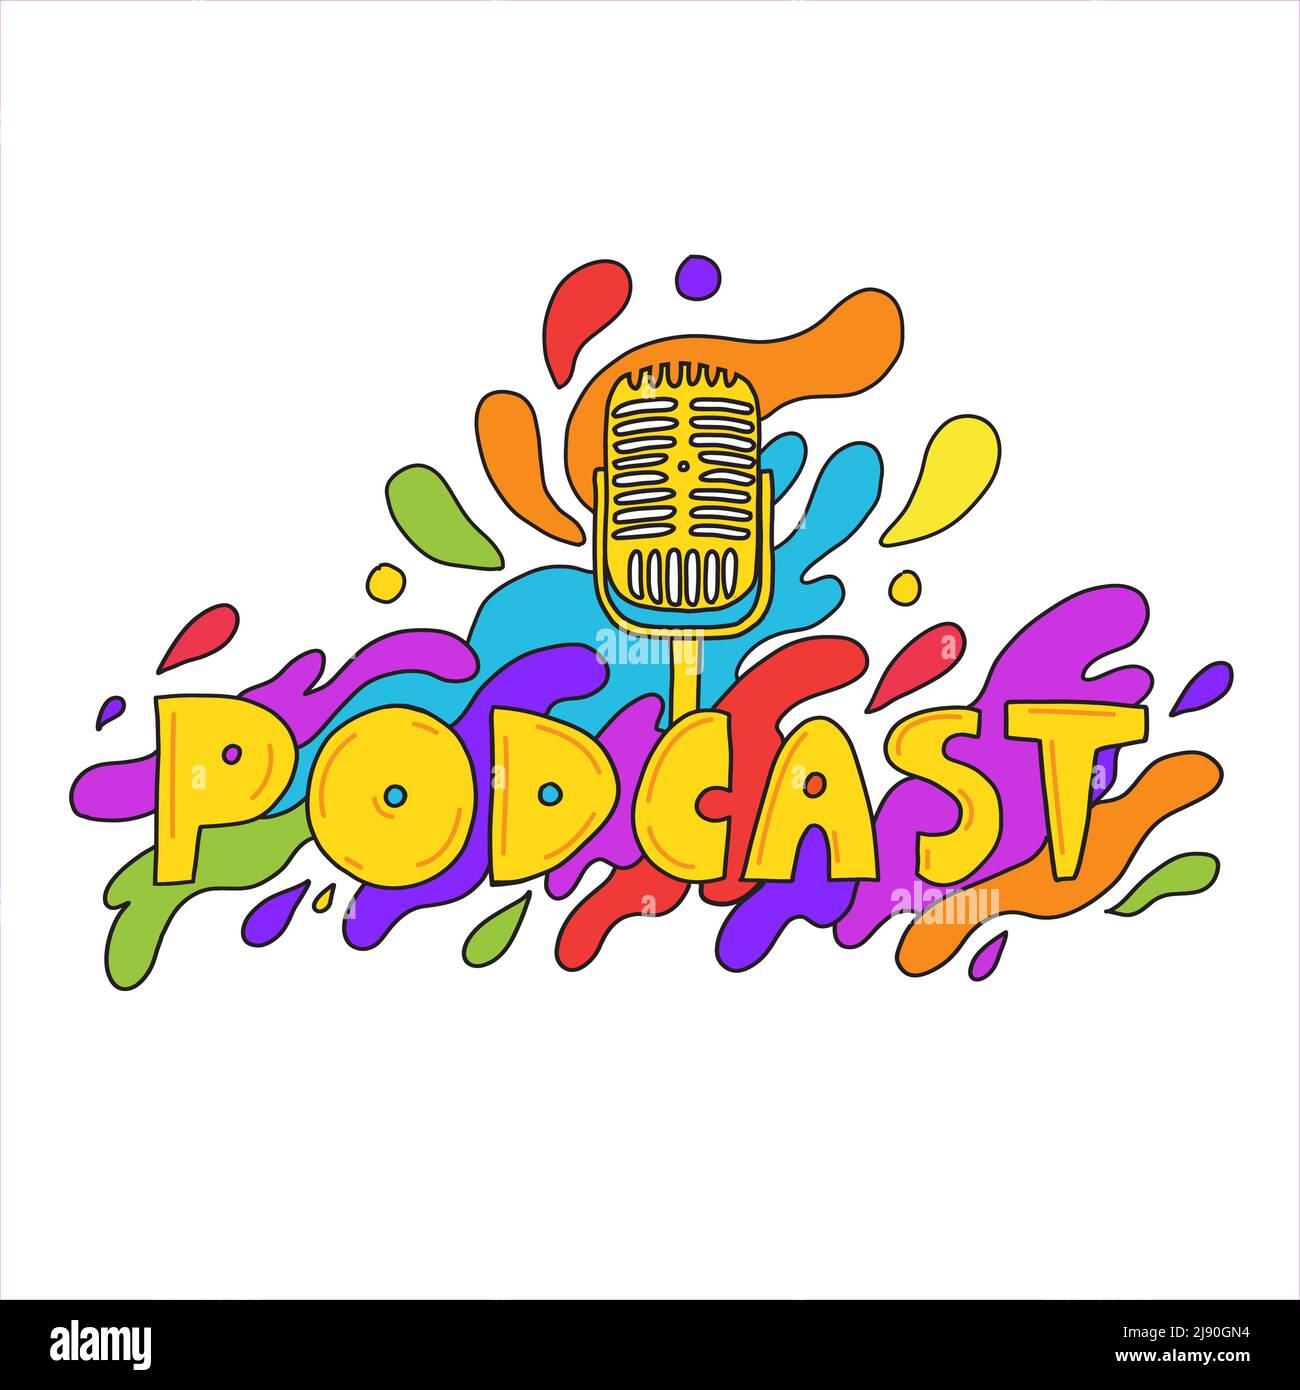 Scritta colorata con il logo del podcast. Divertente logo di podcast fumetto con microfono. Ideale per podcasting, broadcasting, media hosting, banner, web ra Illustrazione Vettoriale